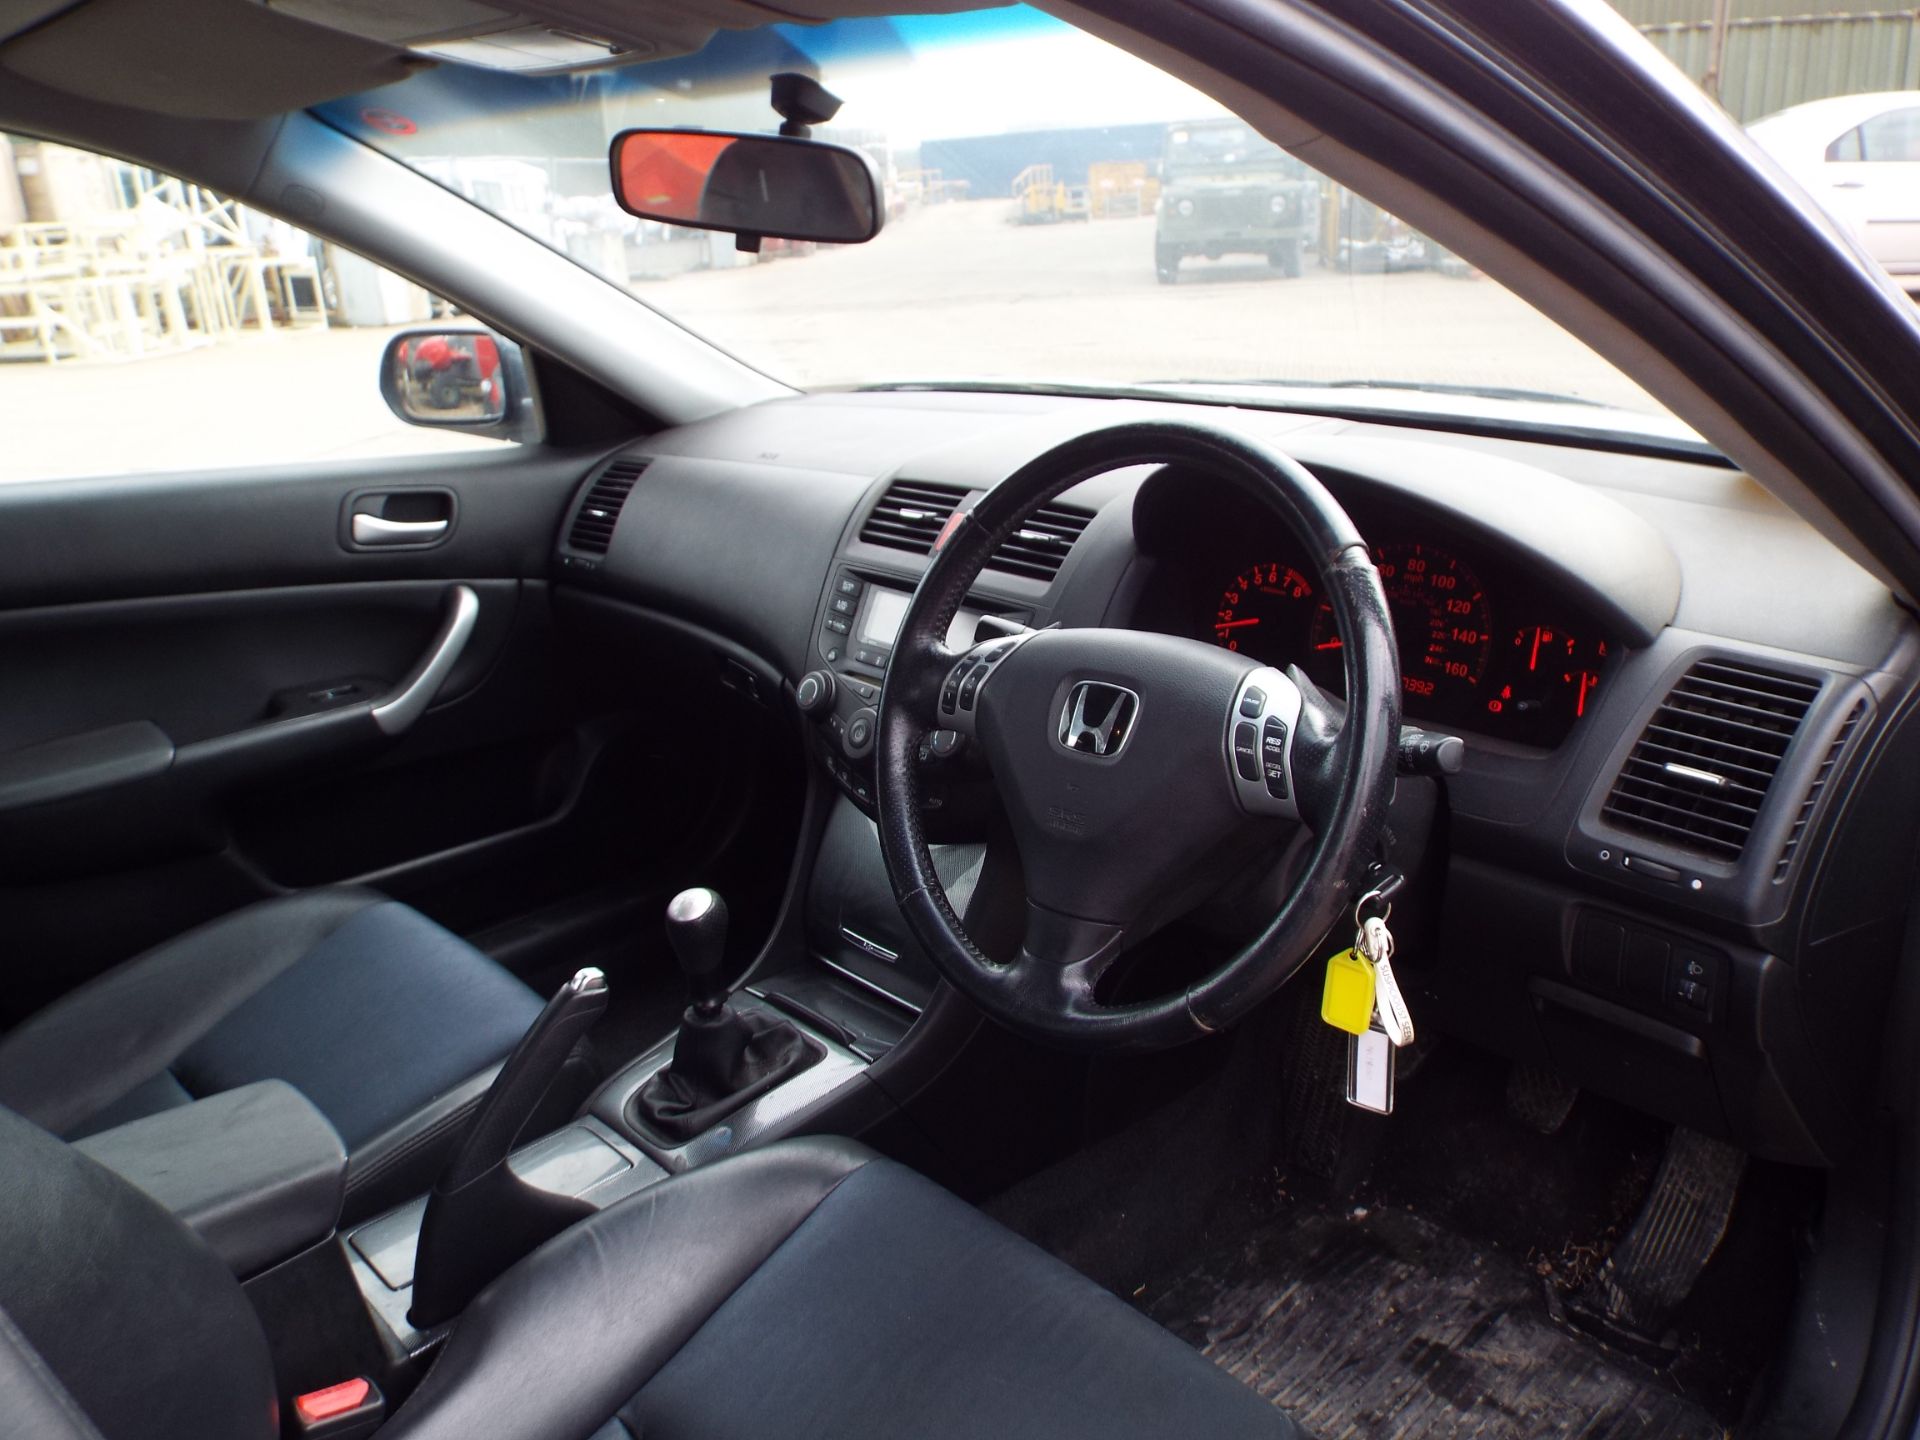 Honda Accord 2.0 VTEC - Image 10 of 21